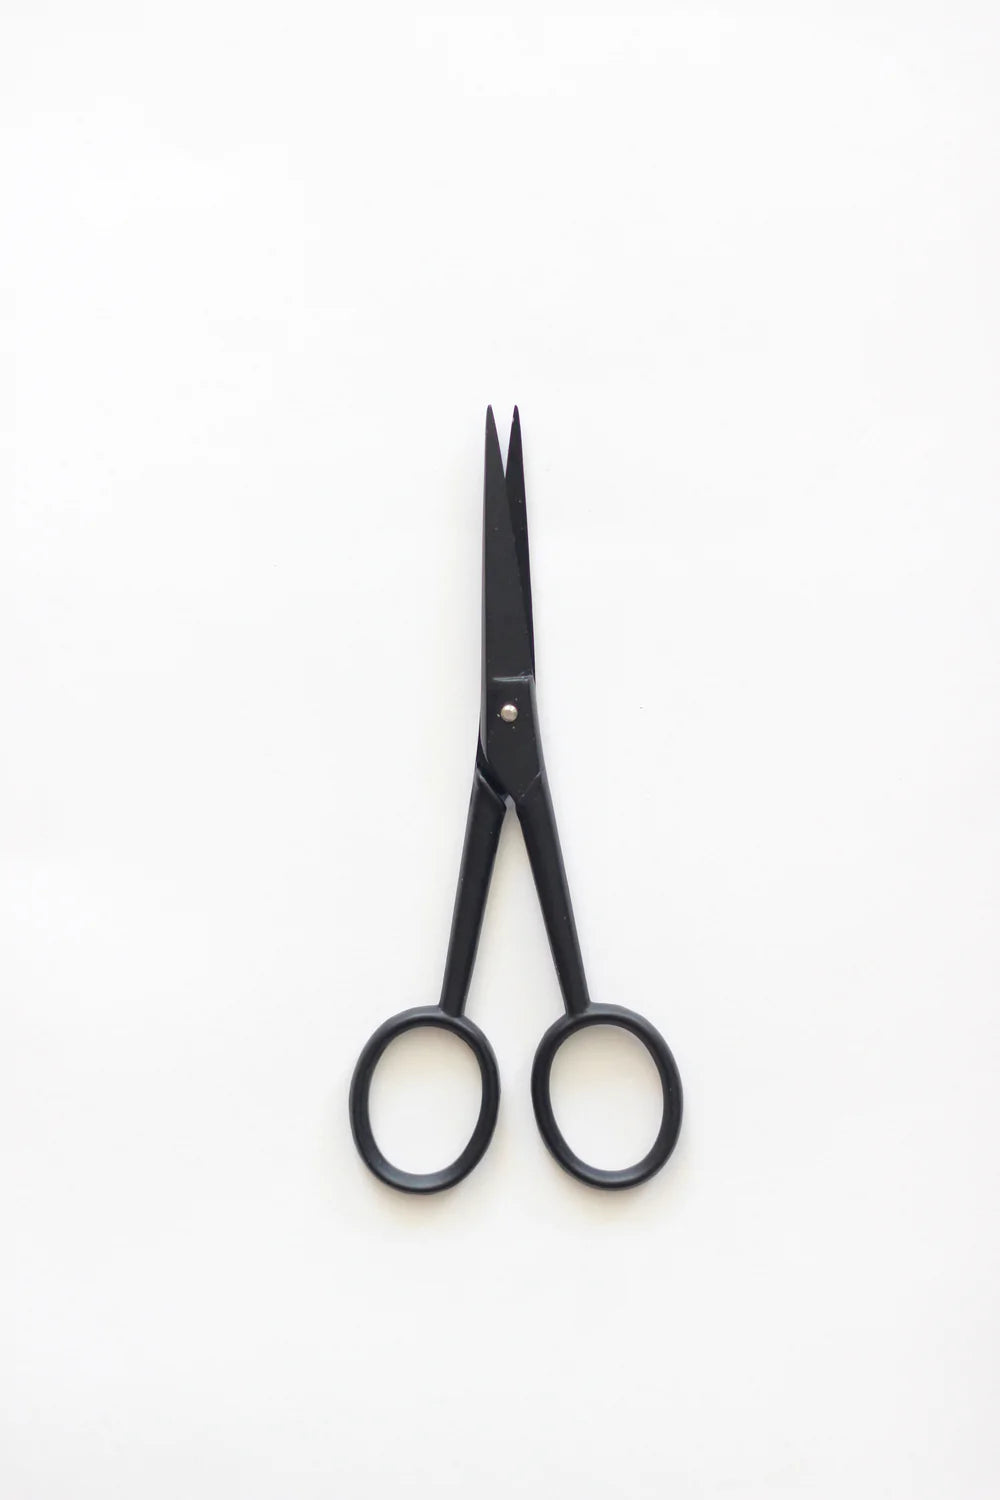 Studio Carta - Scissors - Silhouette - Small - Black